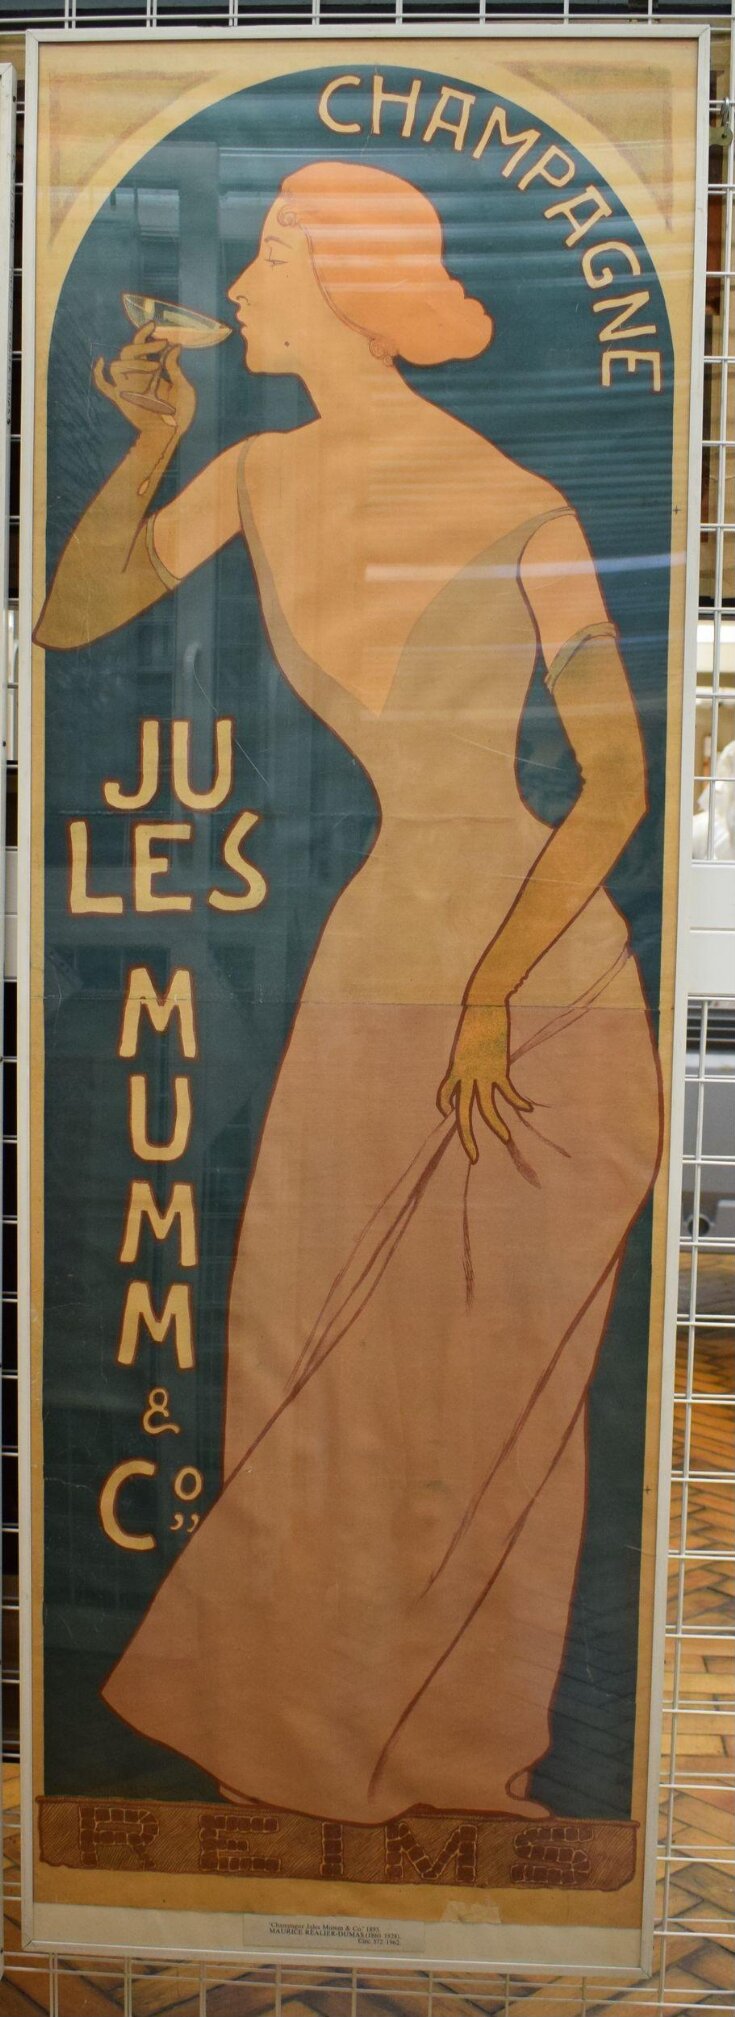 Champagne Jules Mumm et Cie image